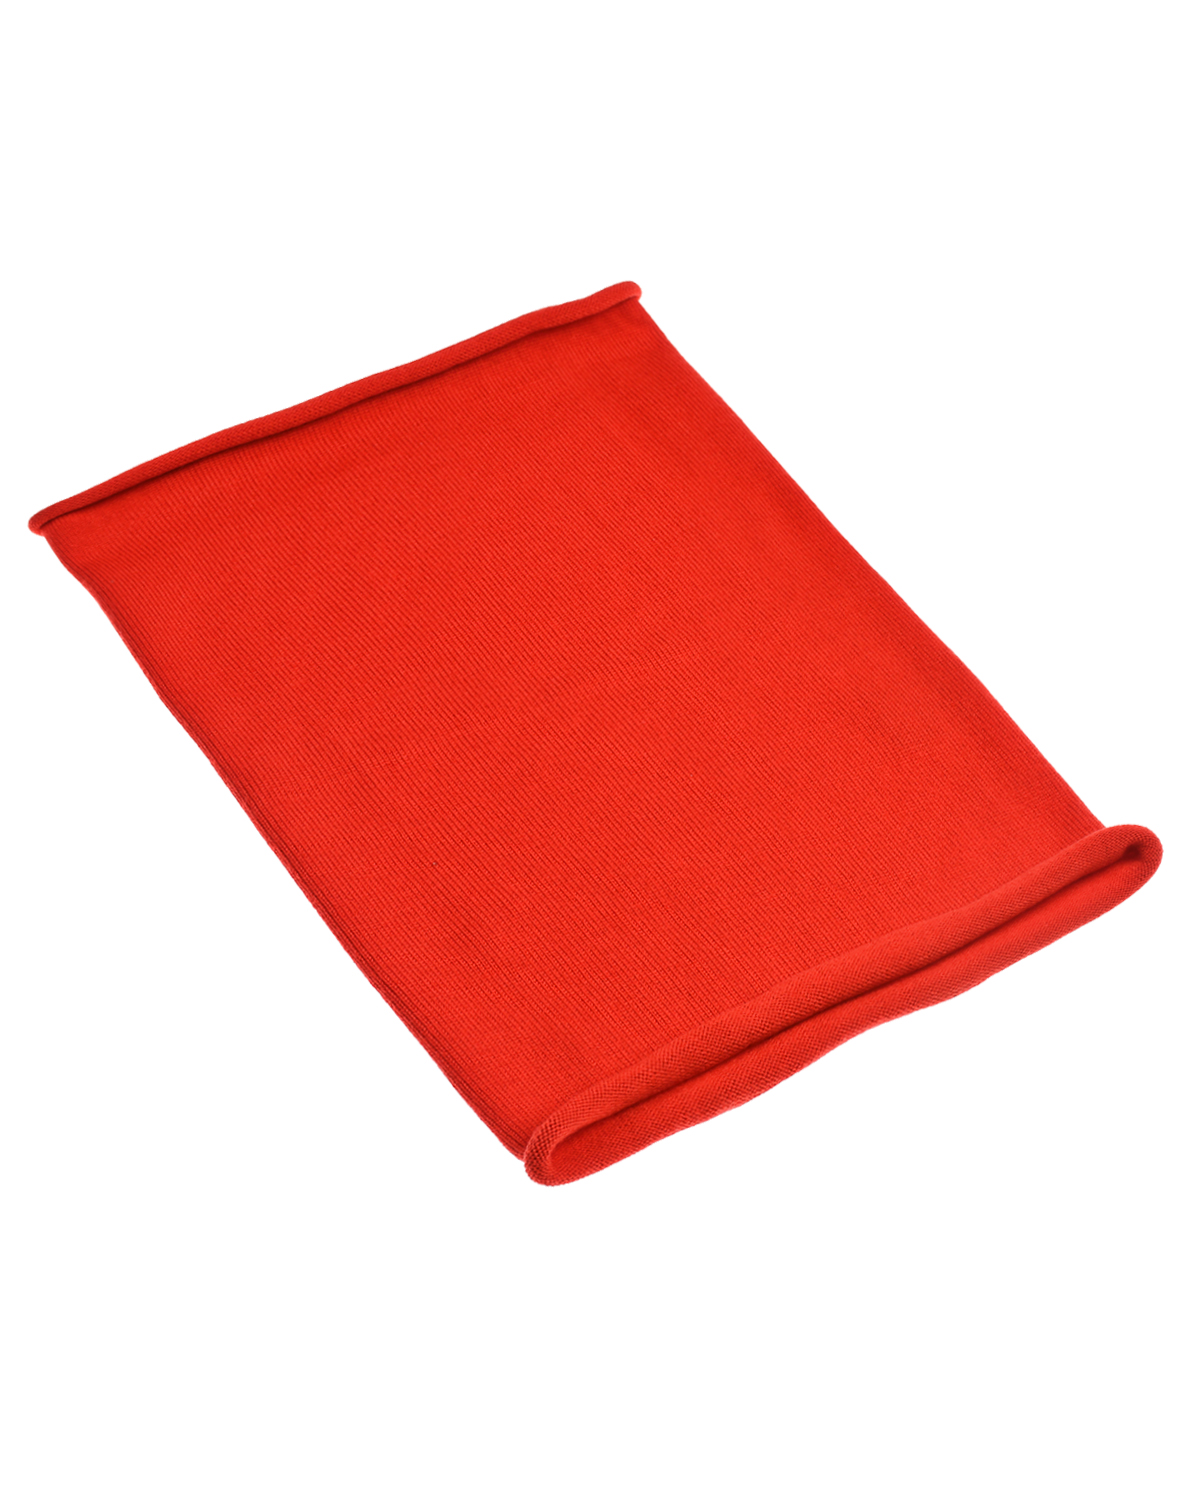 Красный шарф-ворот Norveg детский, размер unica - фото 1